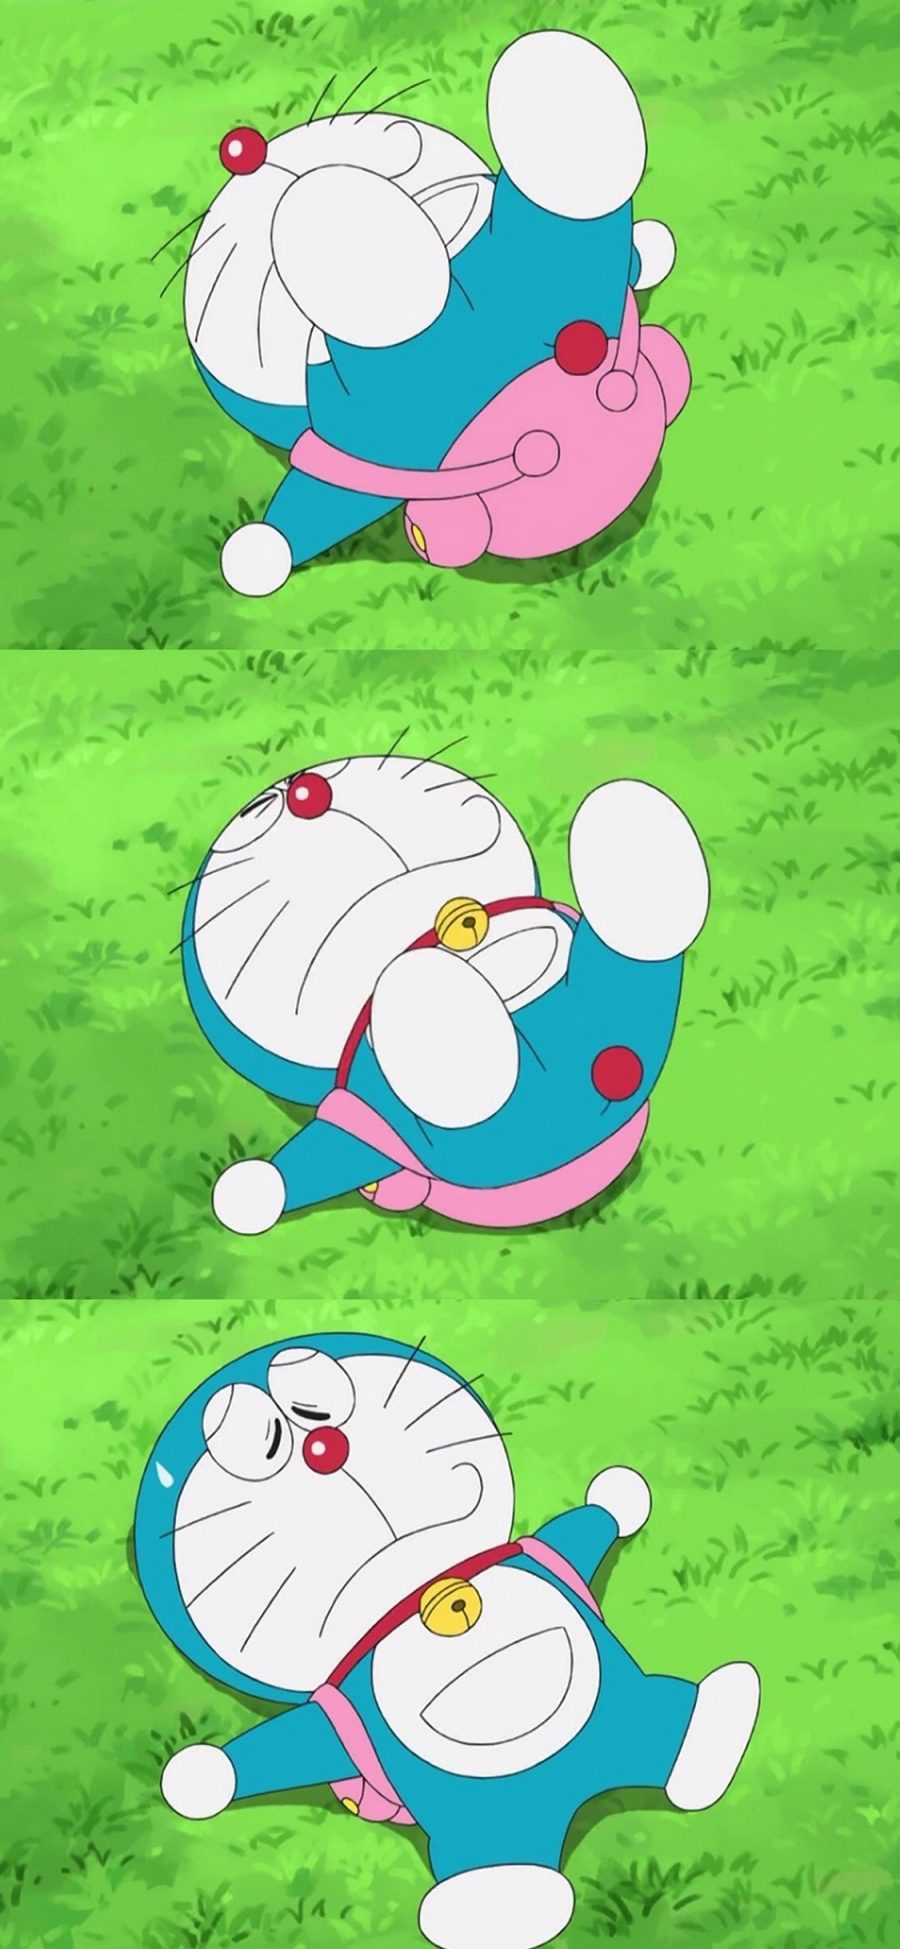 [2436×1125]哆啦A梦 动画片 漫画 叮当猫 草坪 可爱 苹果手机动漫壁纸图片